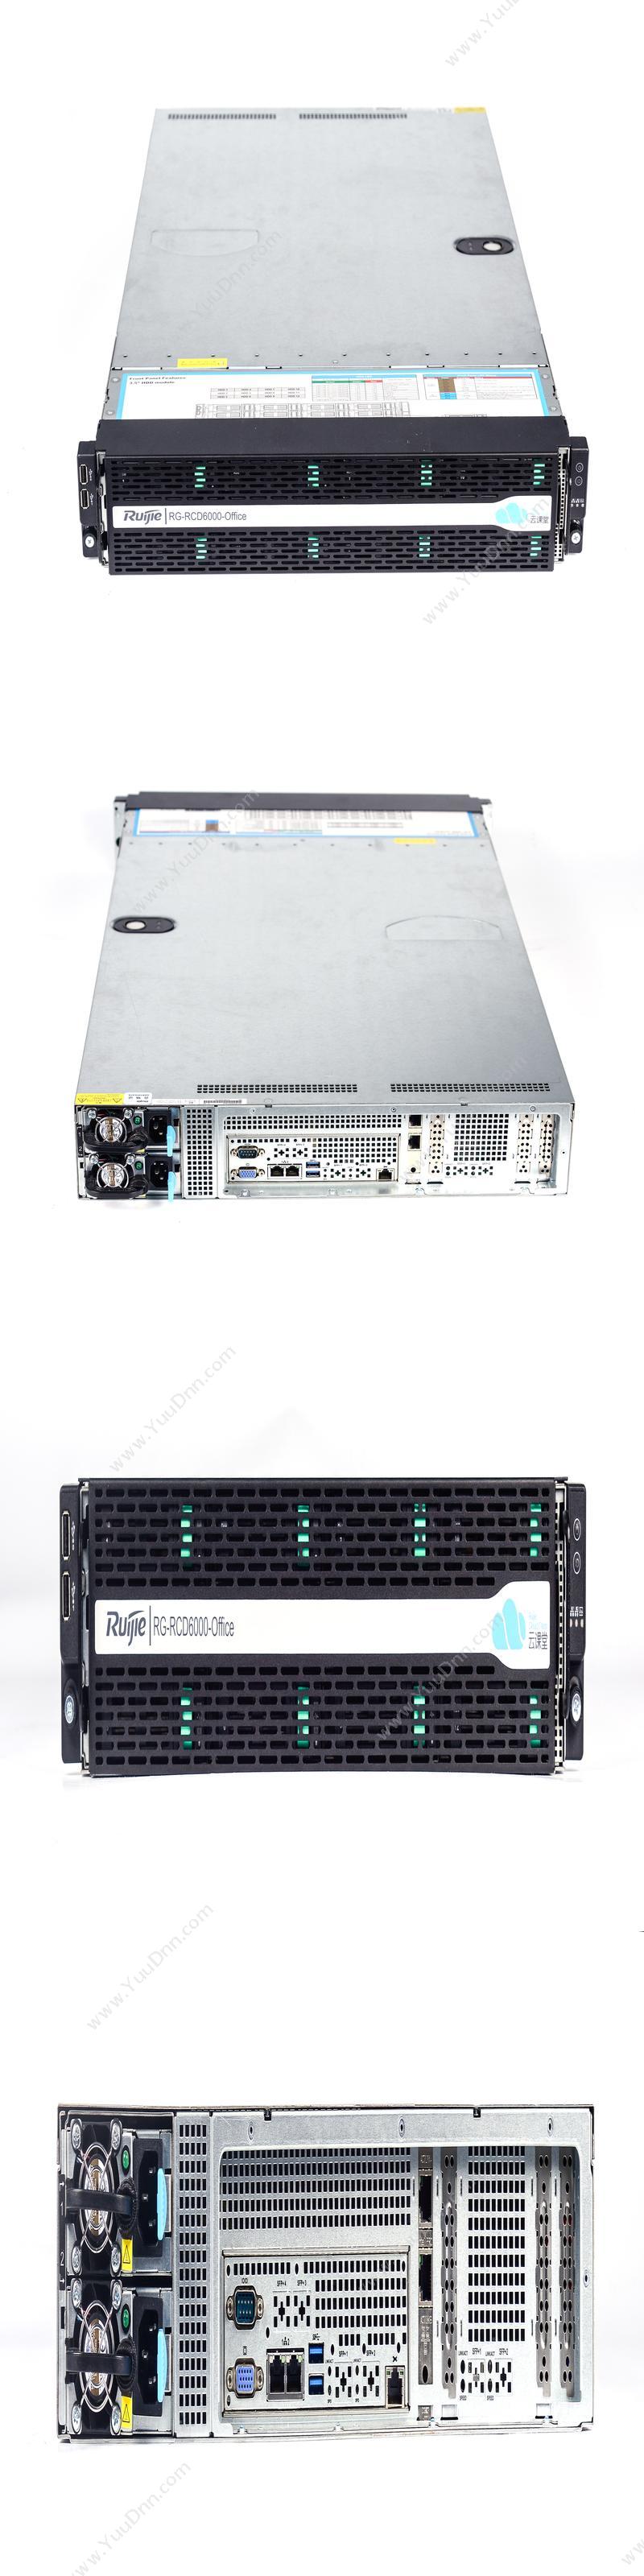 锐捷 RG-RCD6000-Office 服务器 机架式服务器